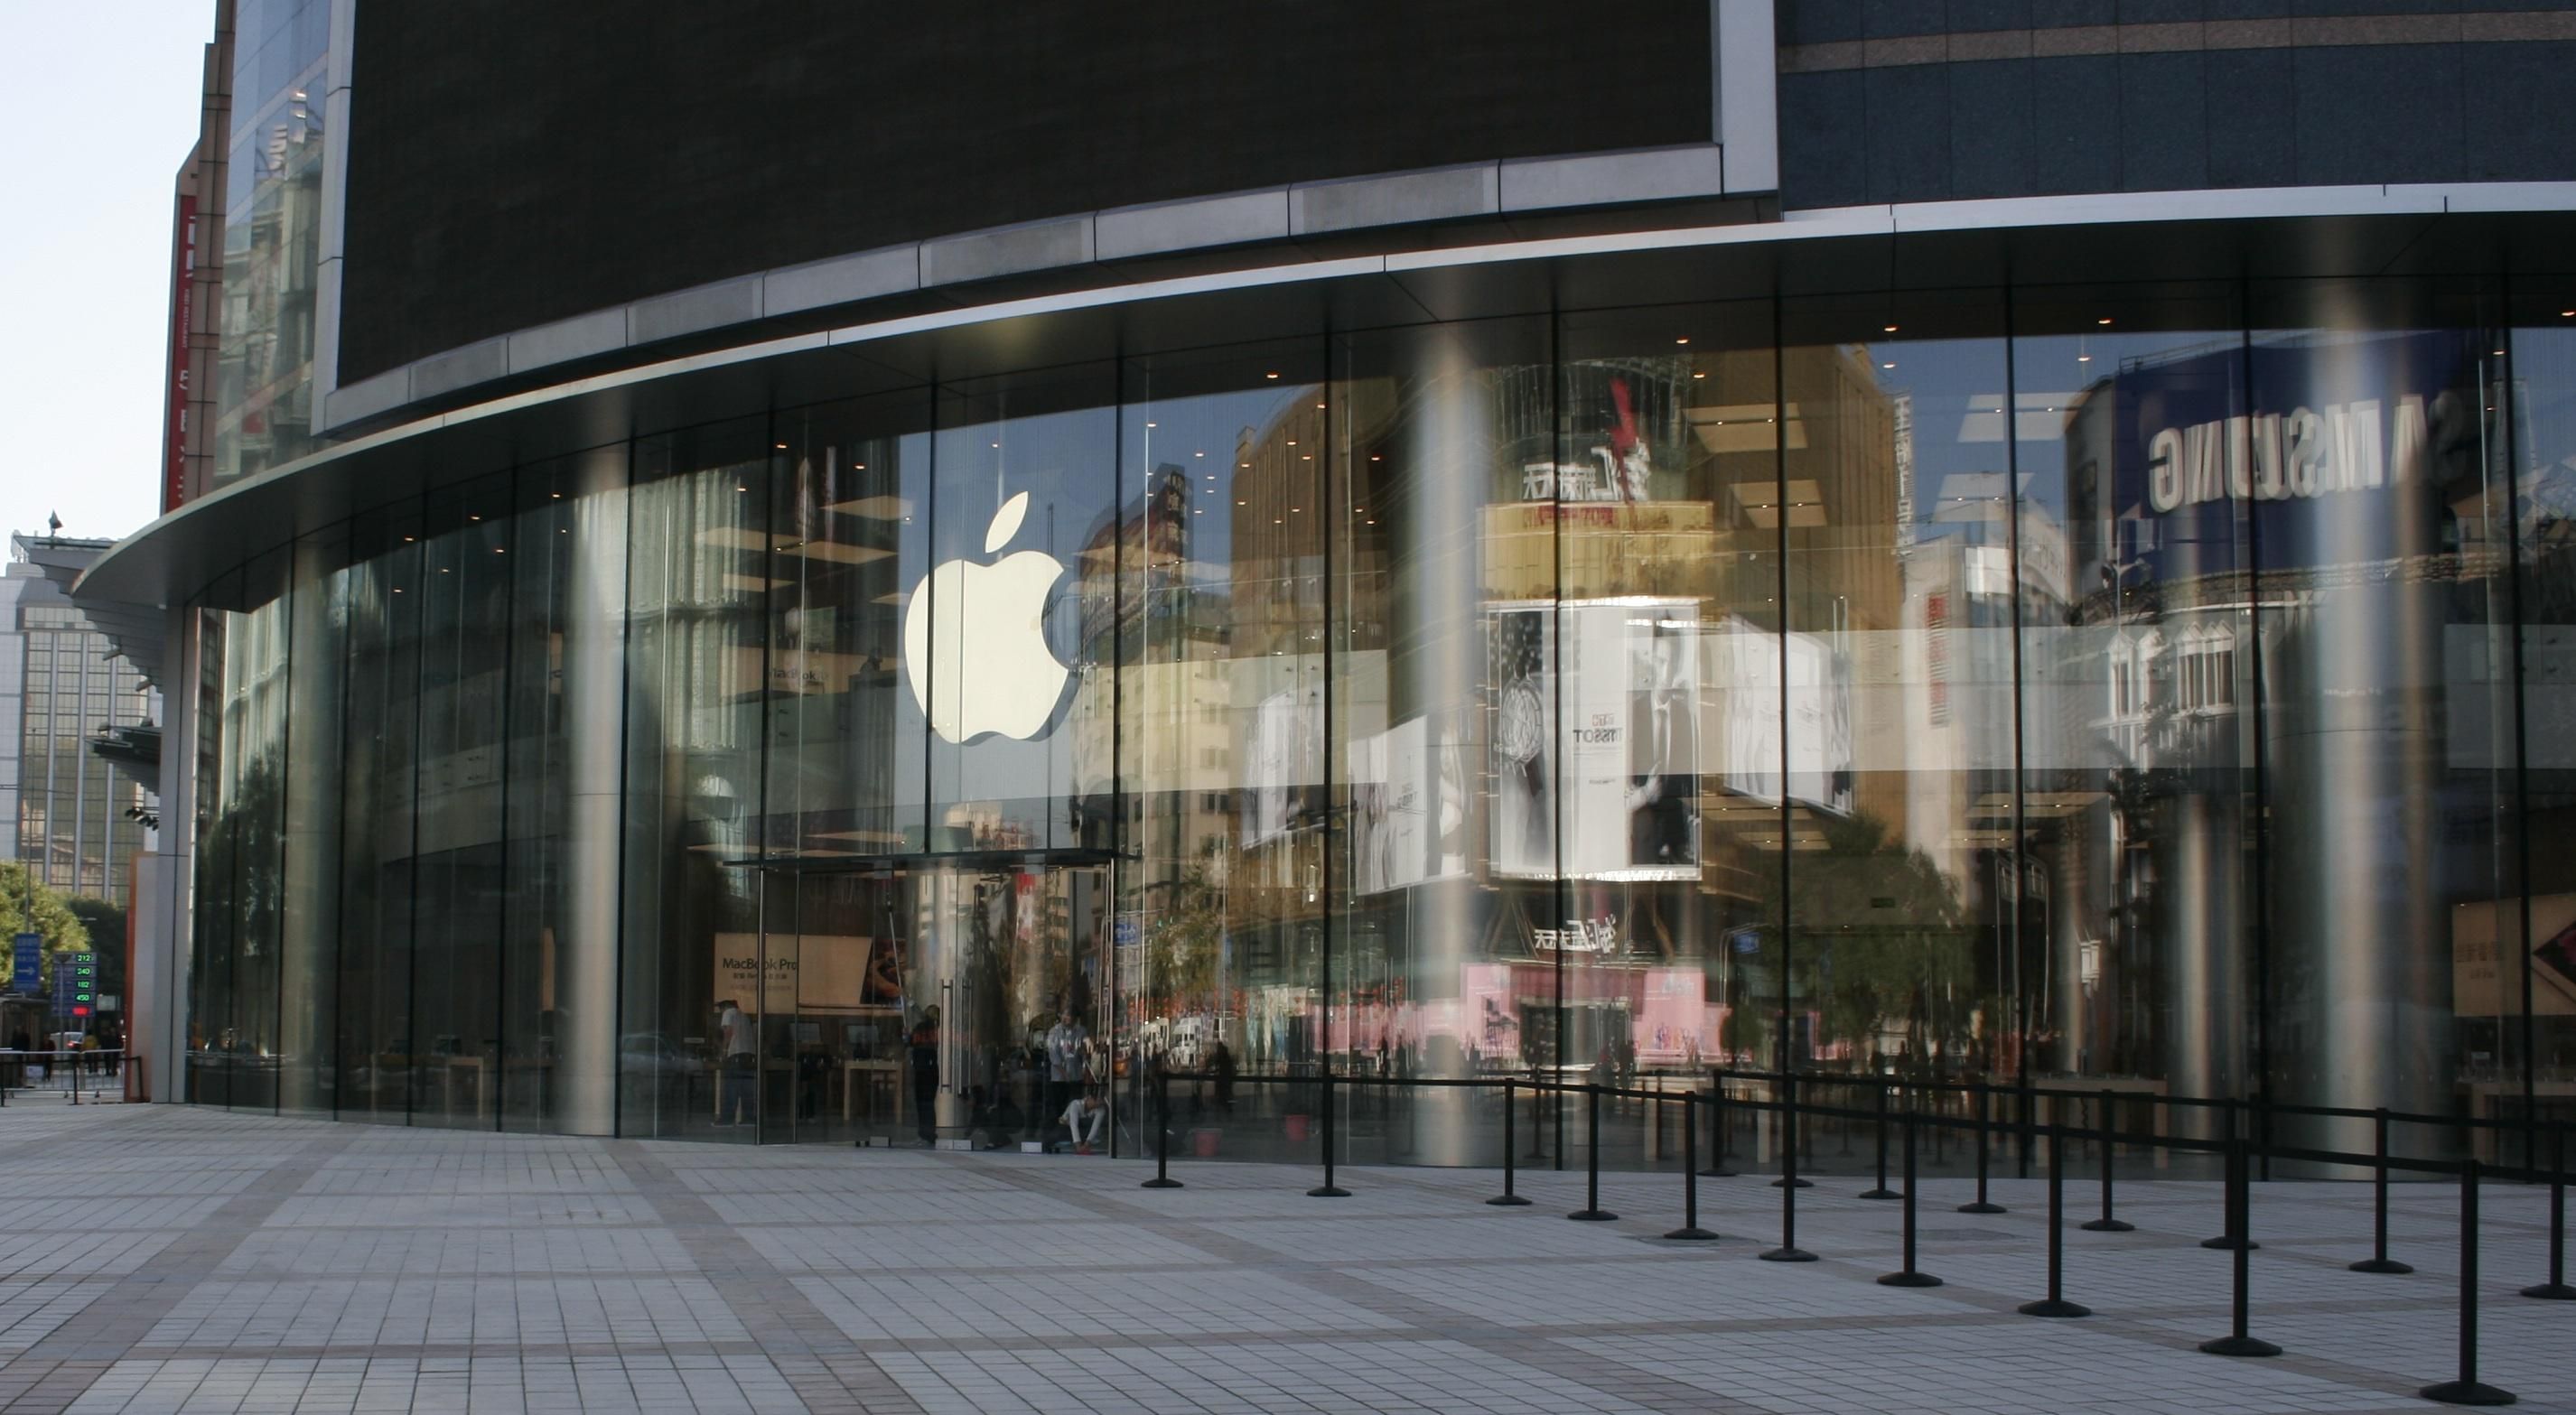 Дела налаживаются: Apple снова открыла все магазины в Китае